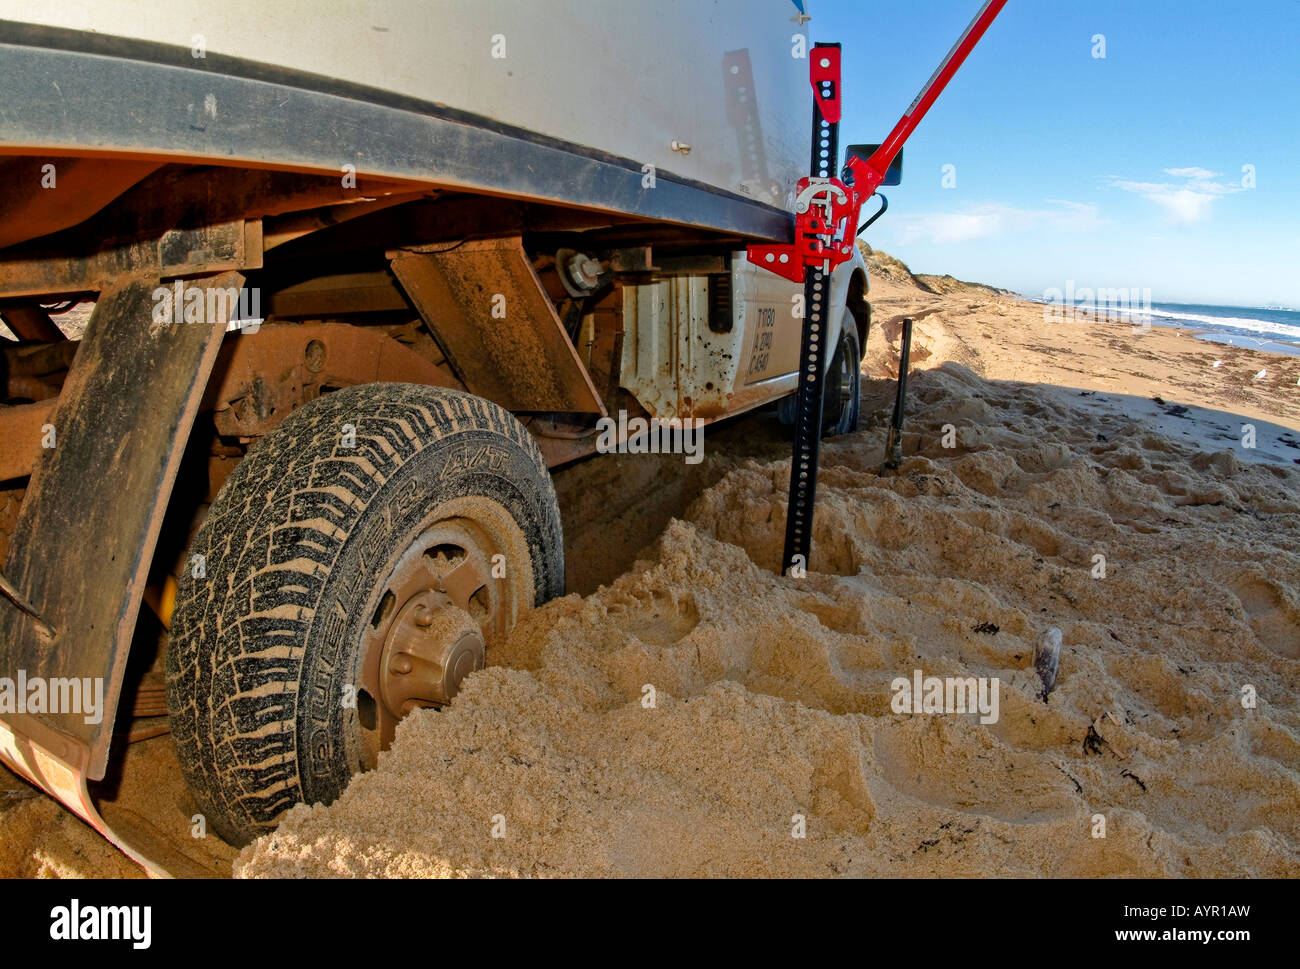 Off-road camper (RV) sollevato e bloccato nella sabbia, Australia occidentale, Australia Foto Stock